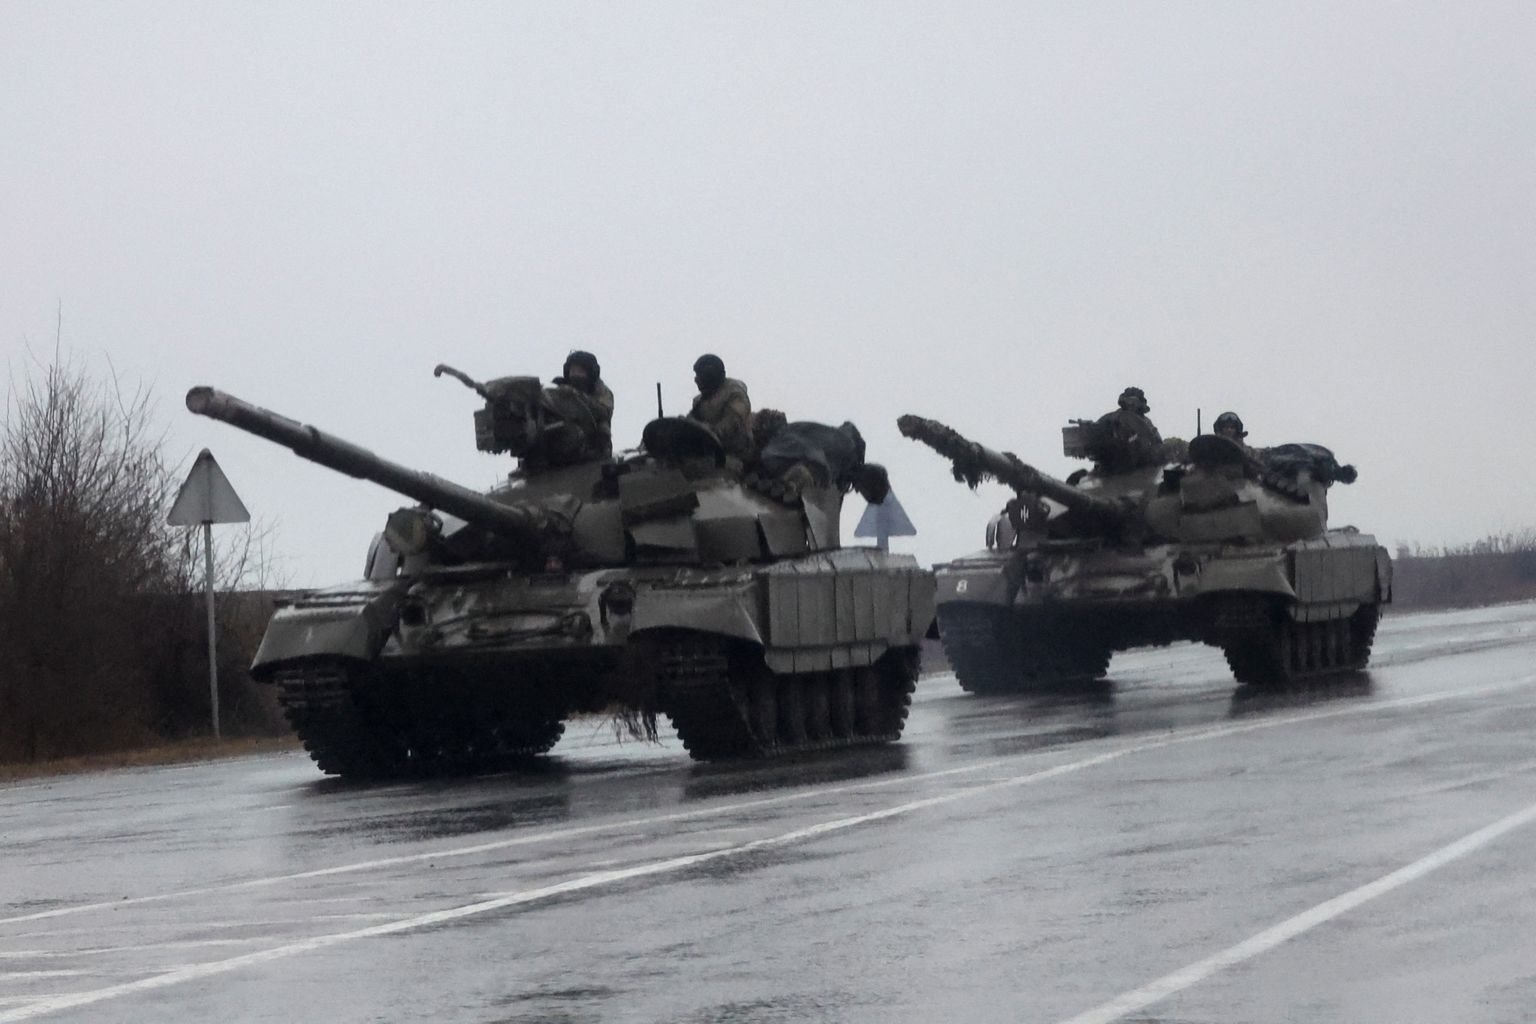 Vene tankid liikumas Ukrainas Mariupoli suunas 26. veebruaril